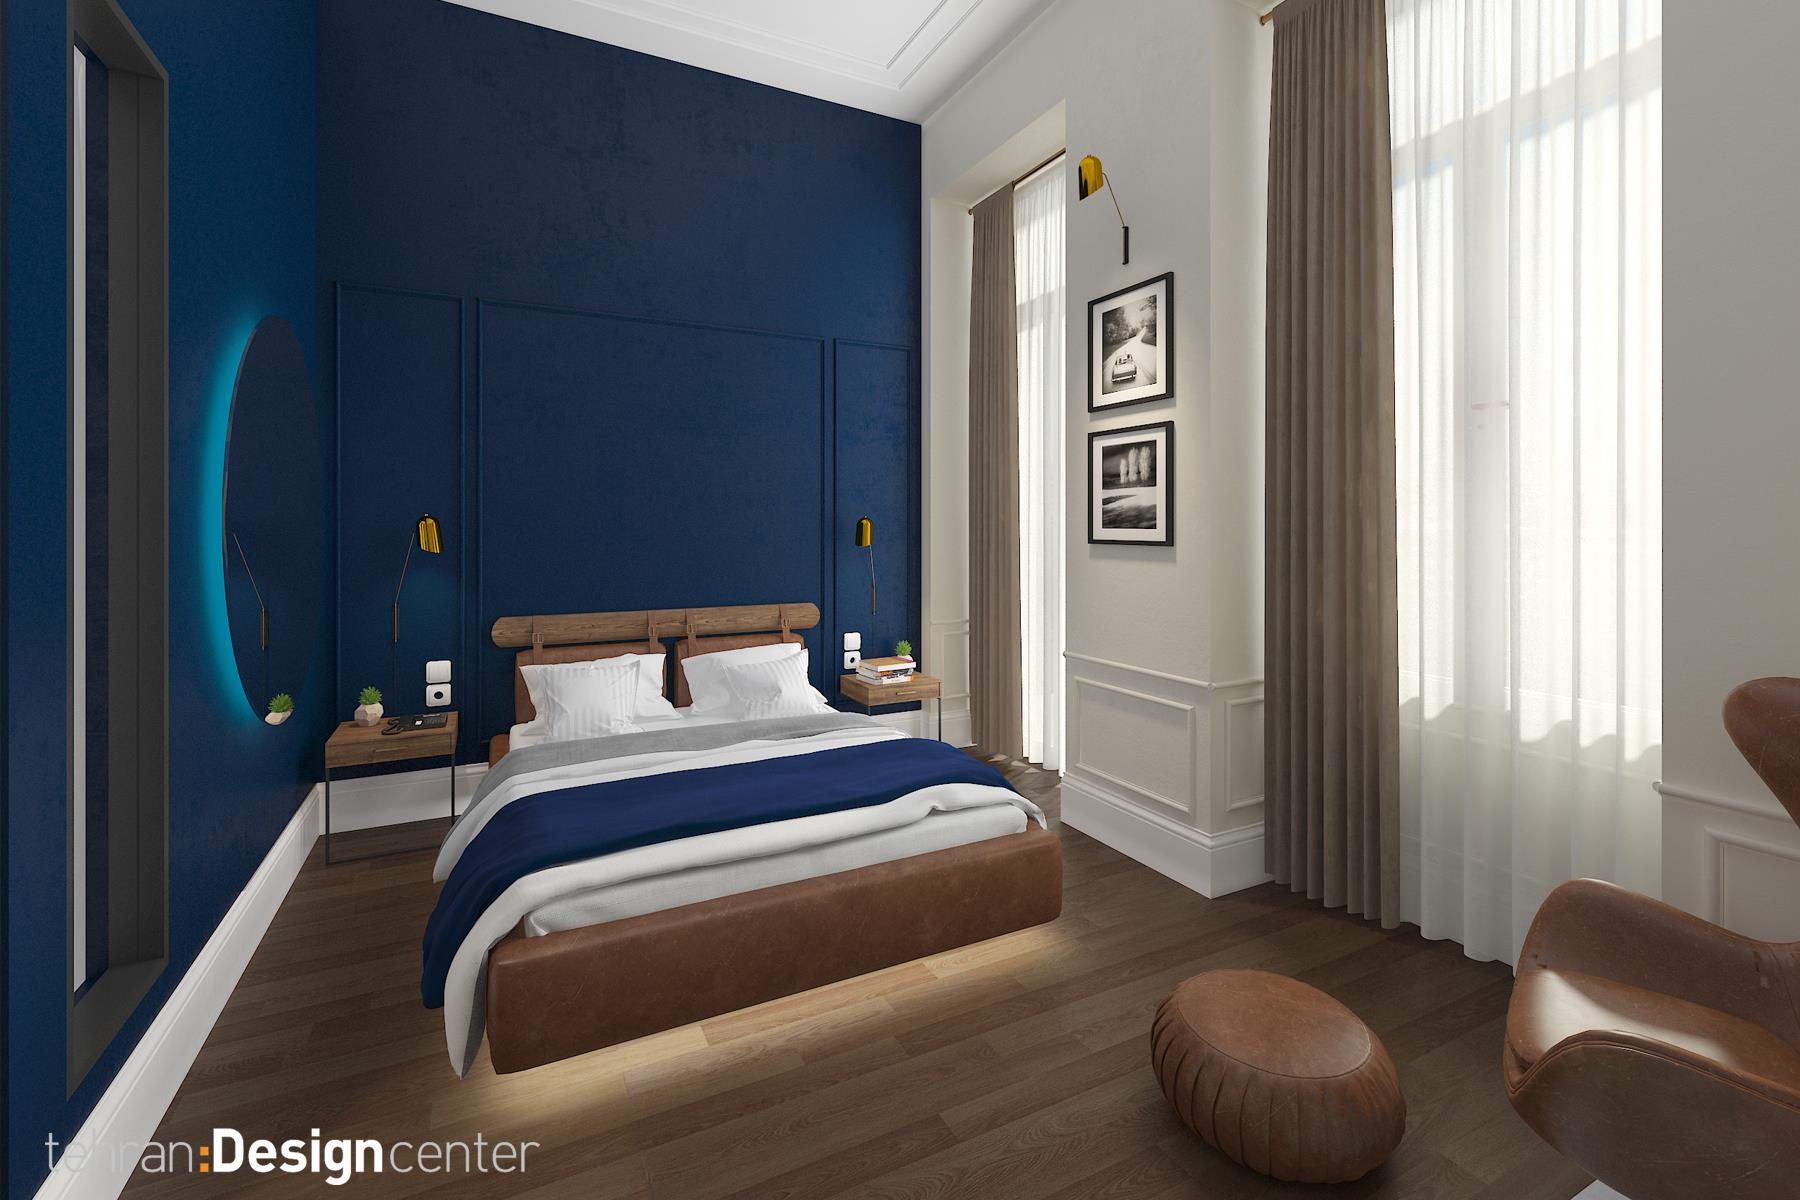 دکوراسیون اتاق خواب آبی رنگ هتل | شرکت معماری داخلی و دکوراسیون تهران دیزاین سنتر